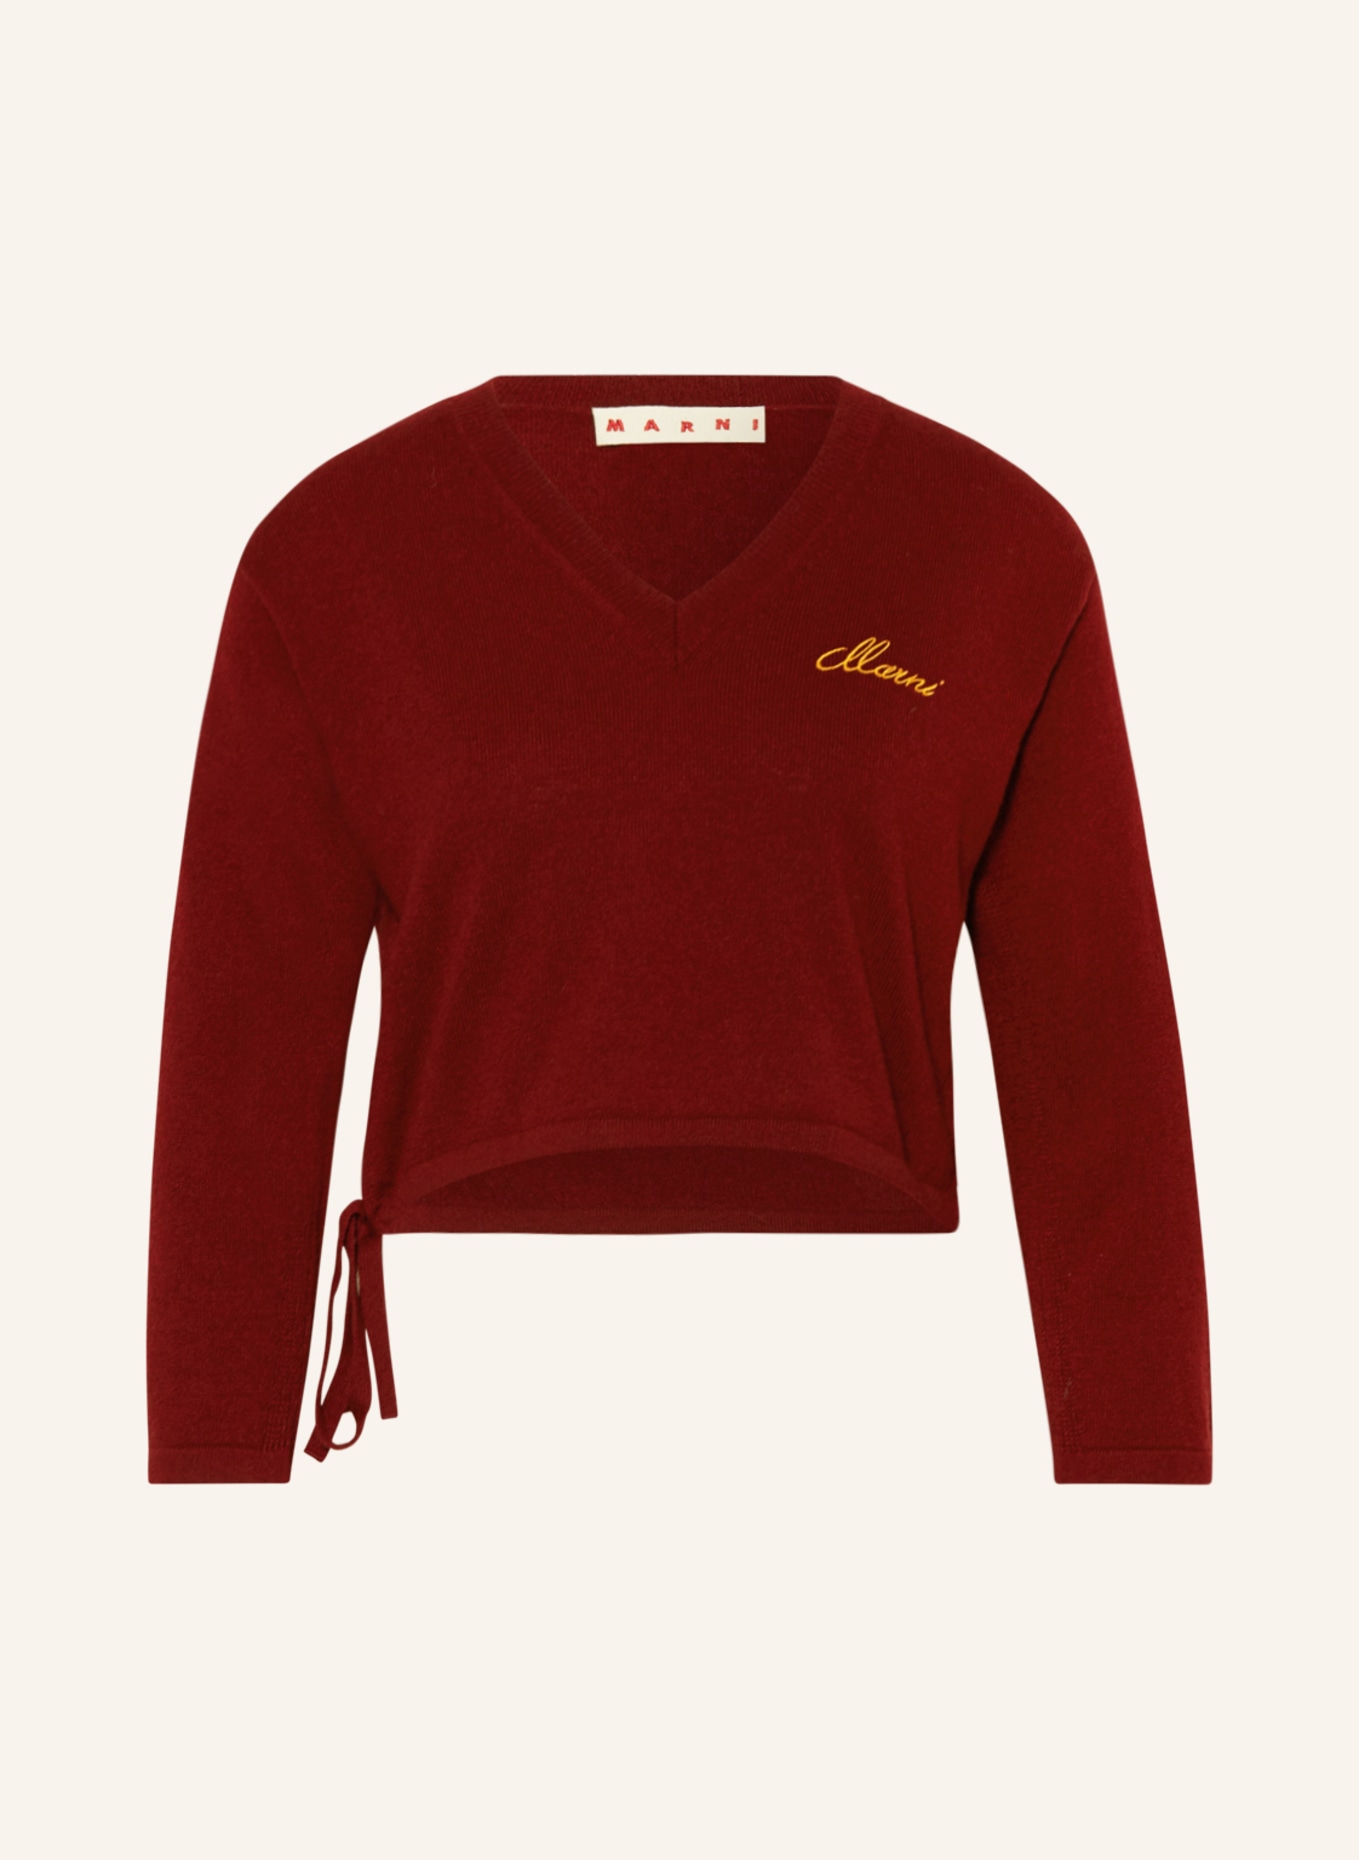 MARNI Cashmere-Pullover, Farbe: DUNKELROT (Bild 1)